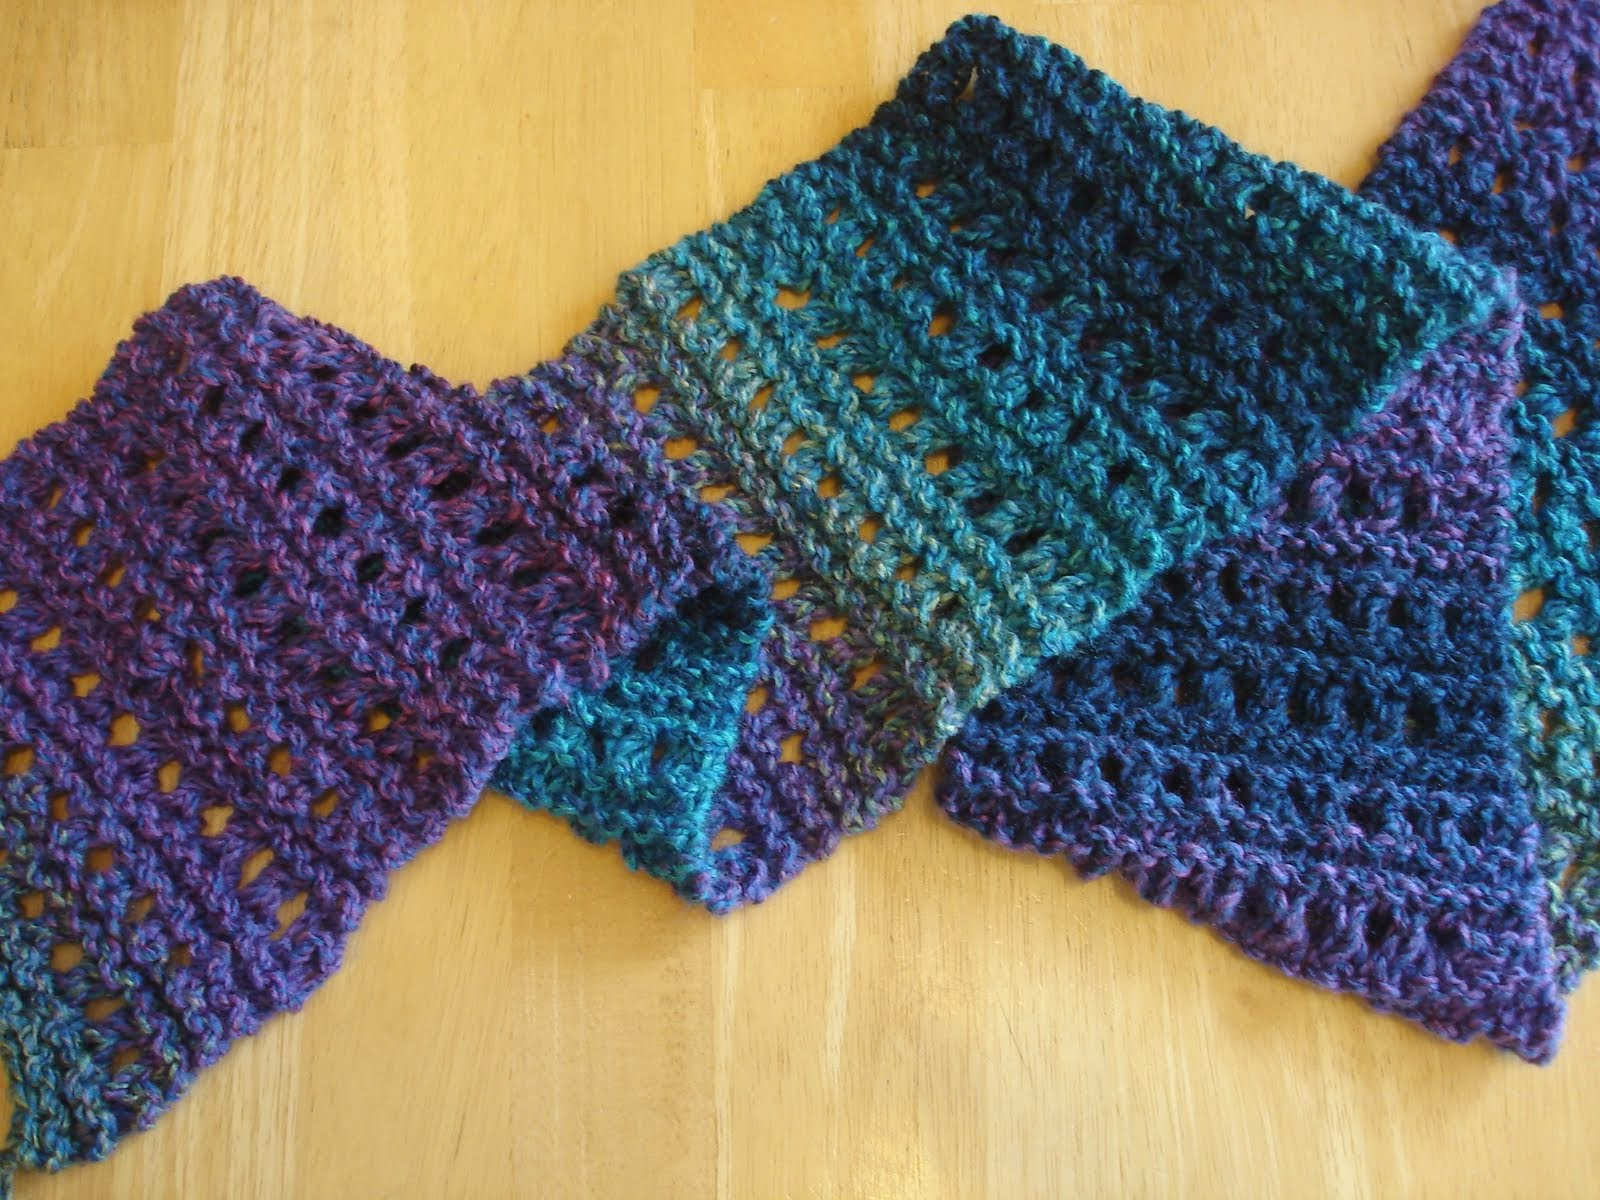 Scarf Patterns Knitting Beginner Best Free Crochet Blanket Patterns For Beginners On Pinterest